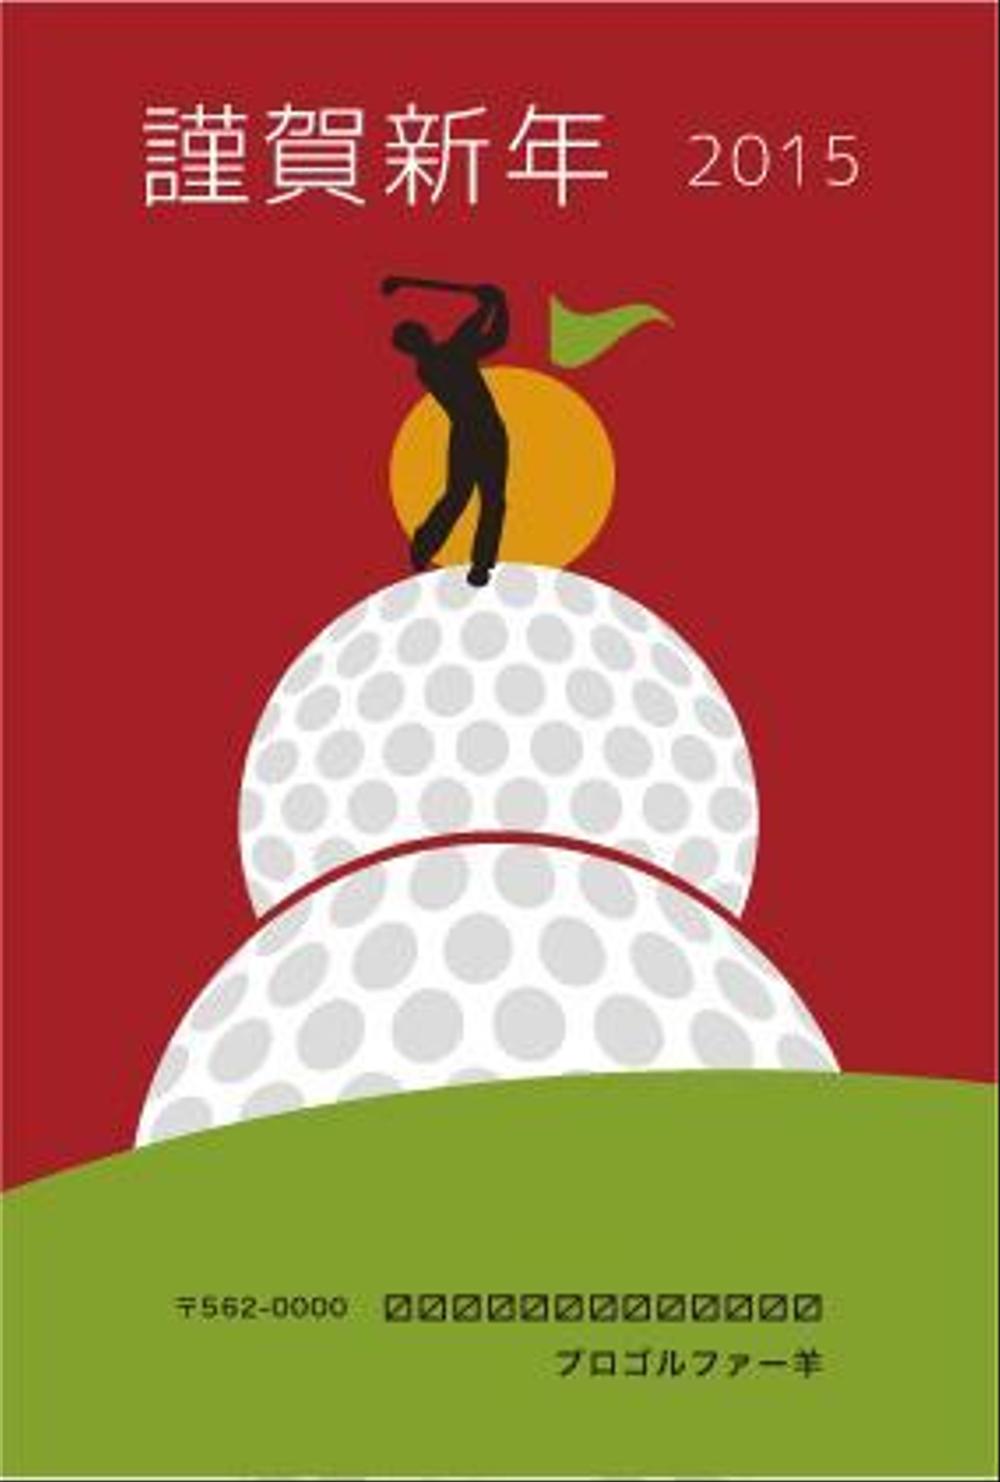 「ゴルフ」をテーマにした年賀状デザイン募集【同時募集あり・複数当選あり】